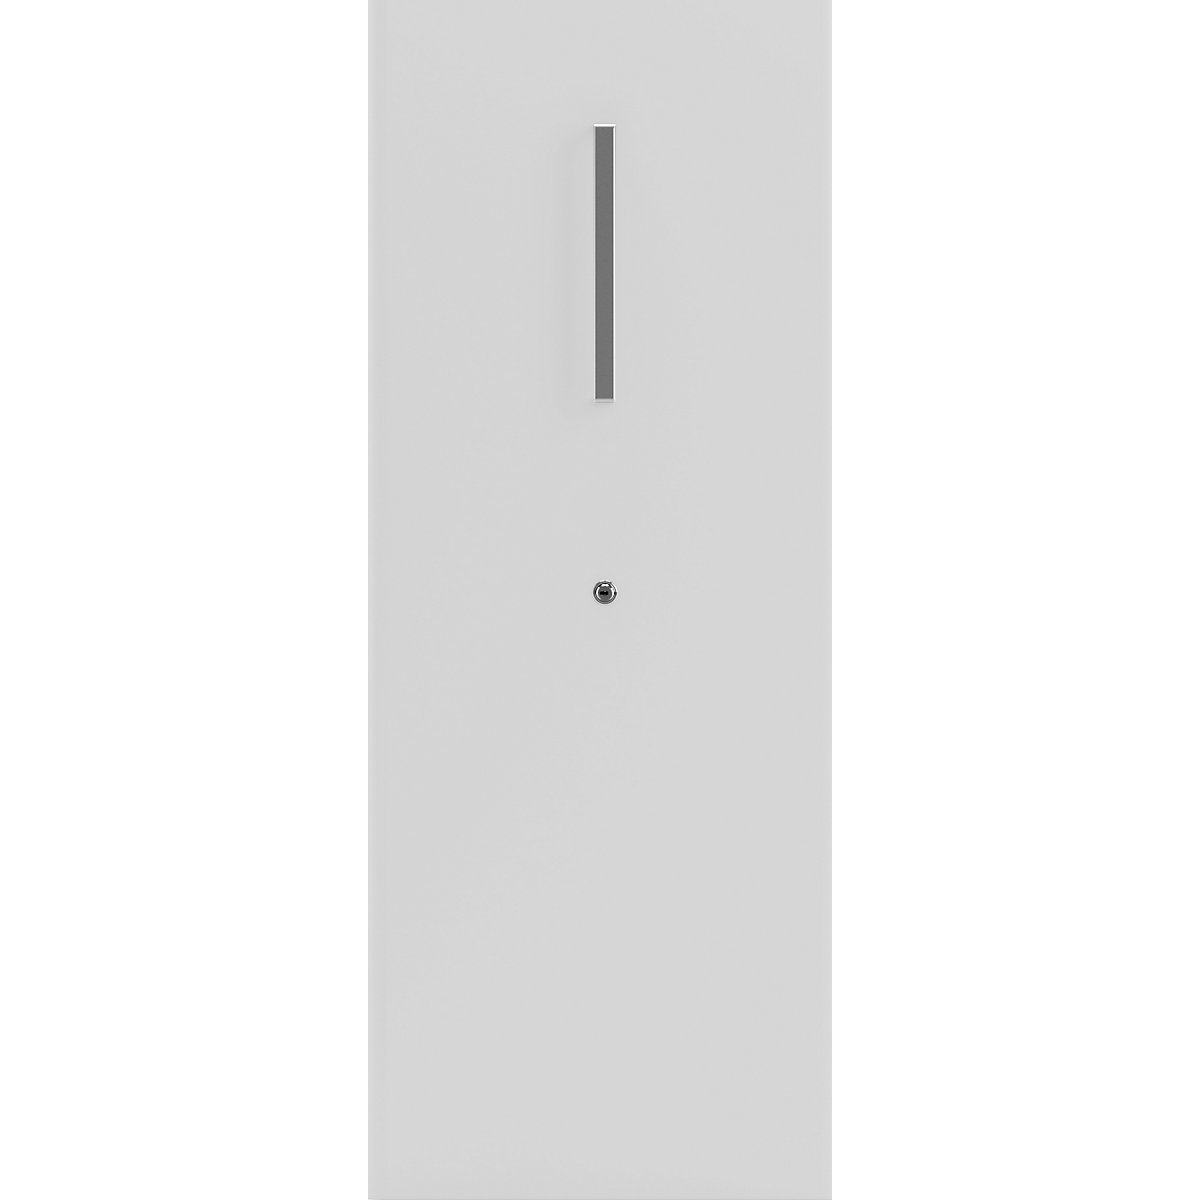 Višenamjenski ladičar Tower™ 4, s gornjim dijelom – BISLEY (Prikaz proizvoda 2)-1